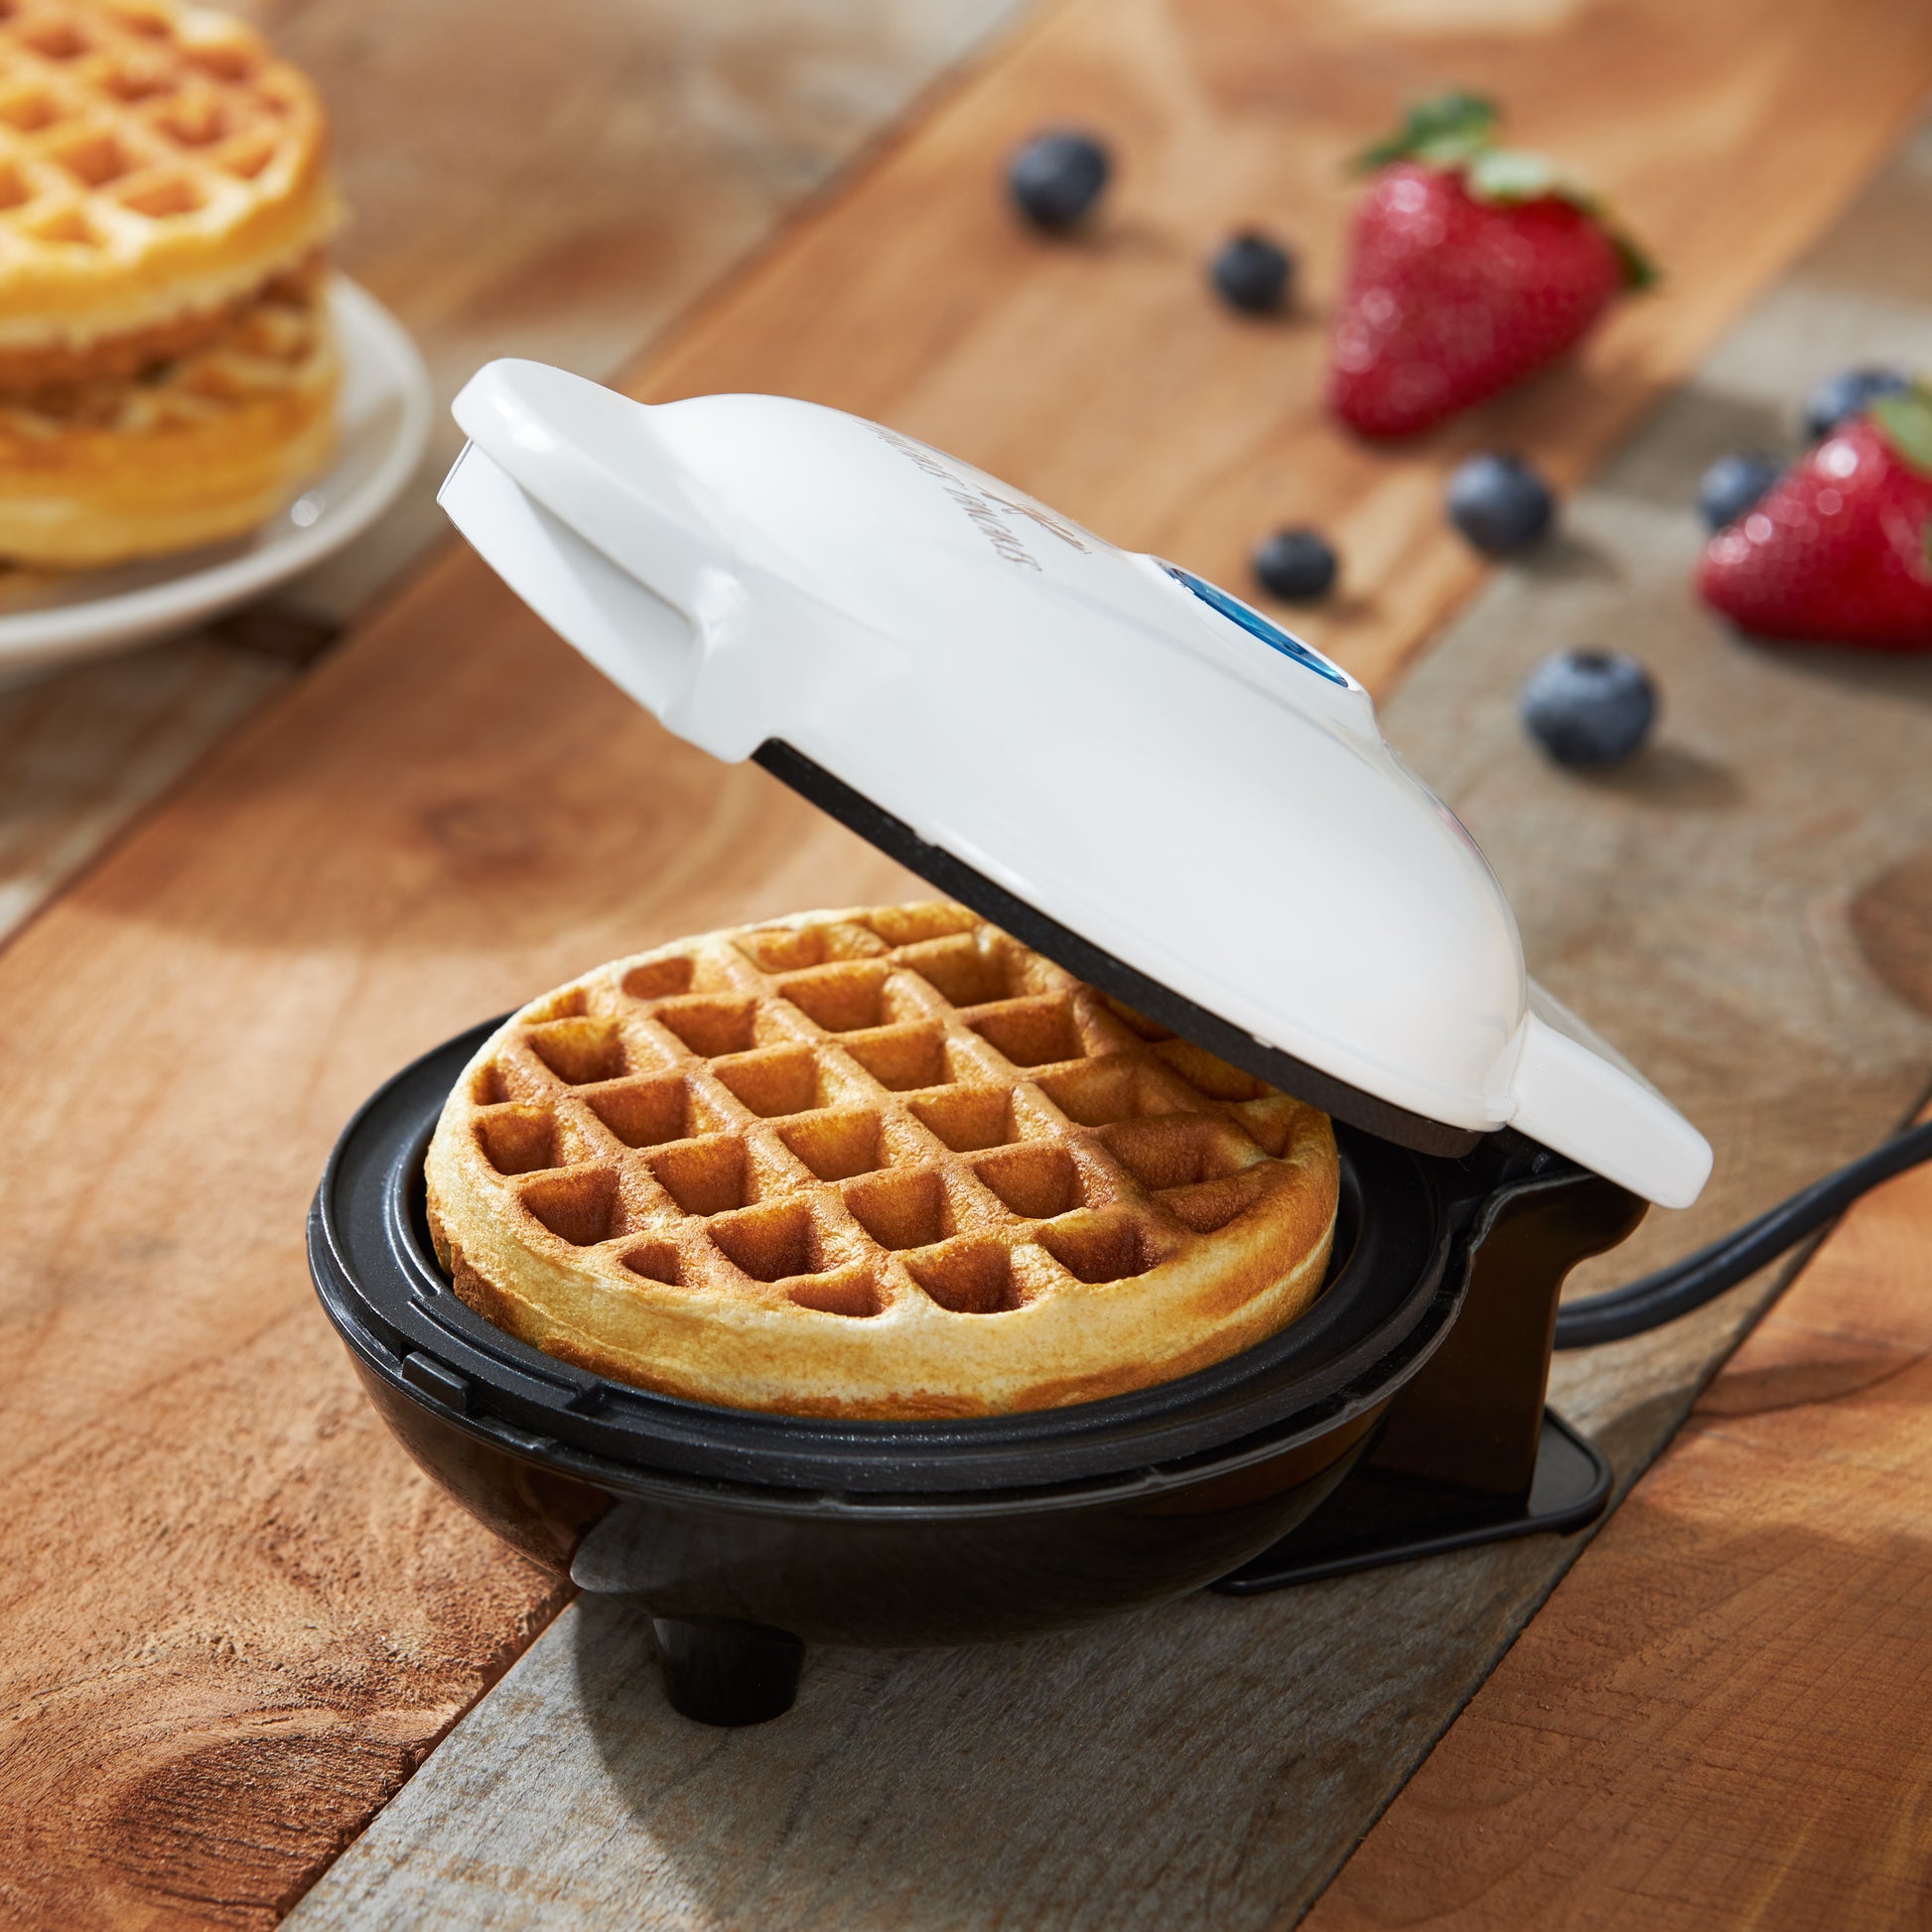 Dash Mini Maker Waffle Maker Griddle, 2-Pack Griddle Waffle Iron - Black